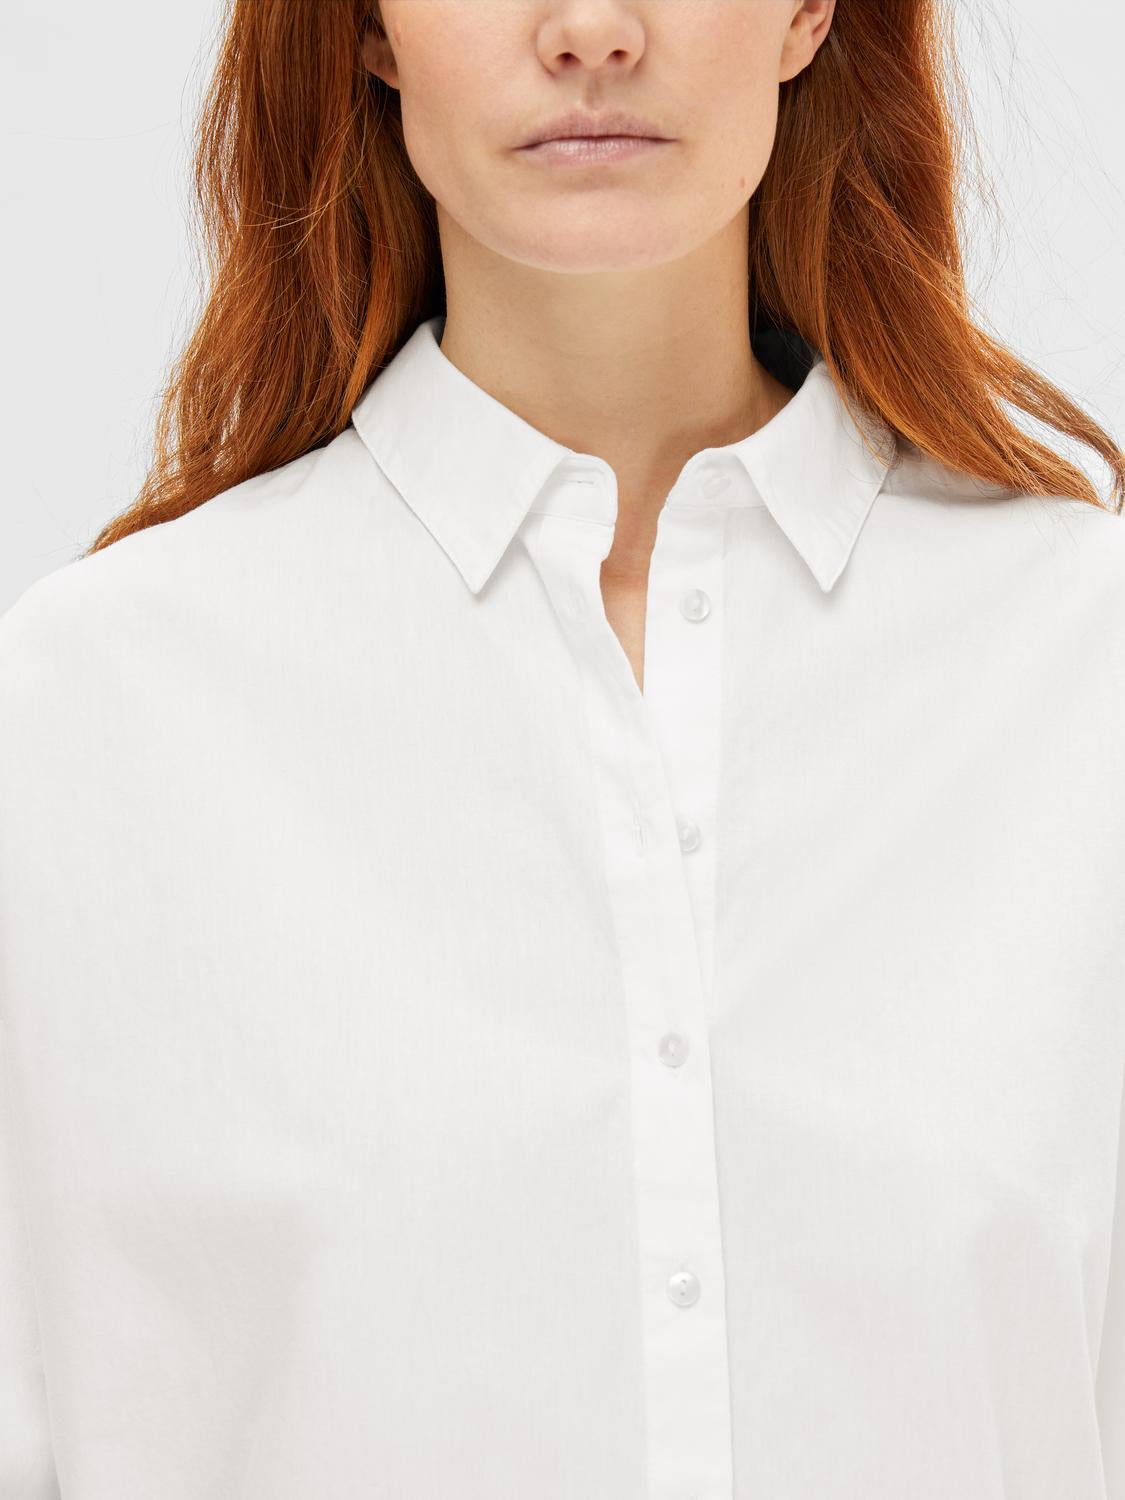 SLFDINA-SANNI Shirts - Bright White